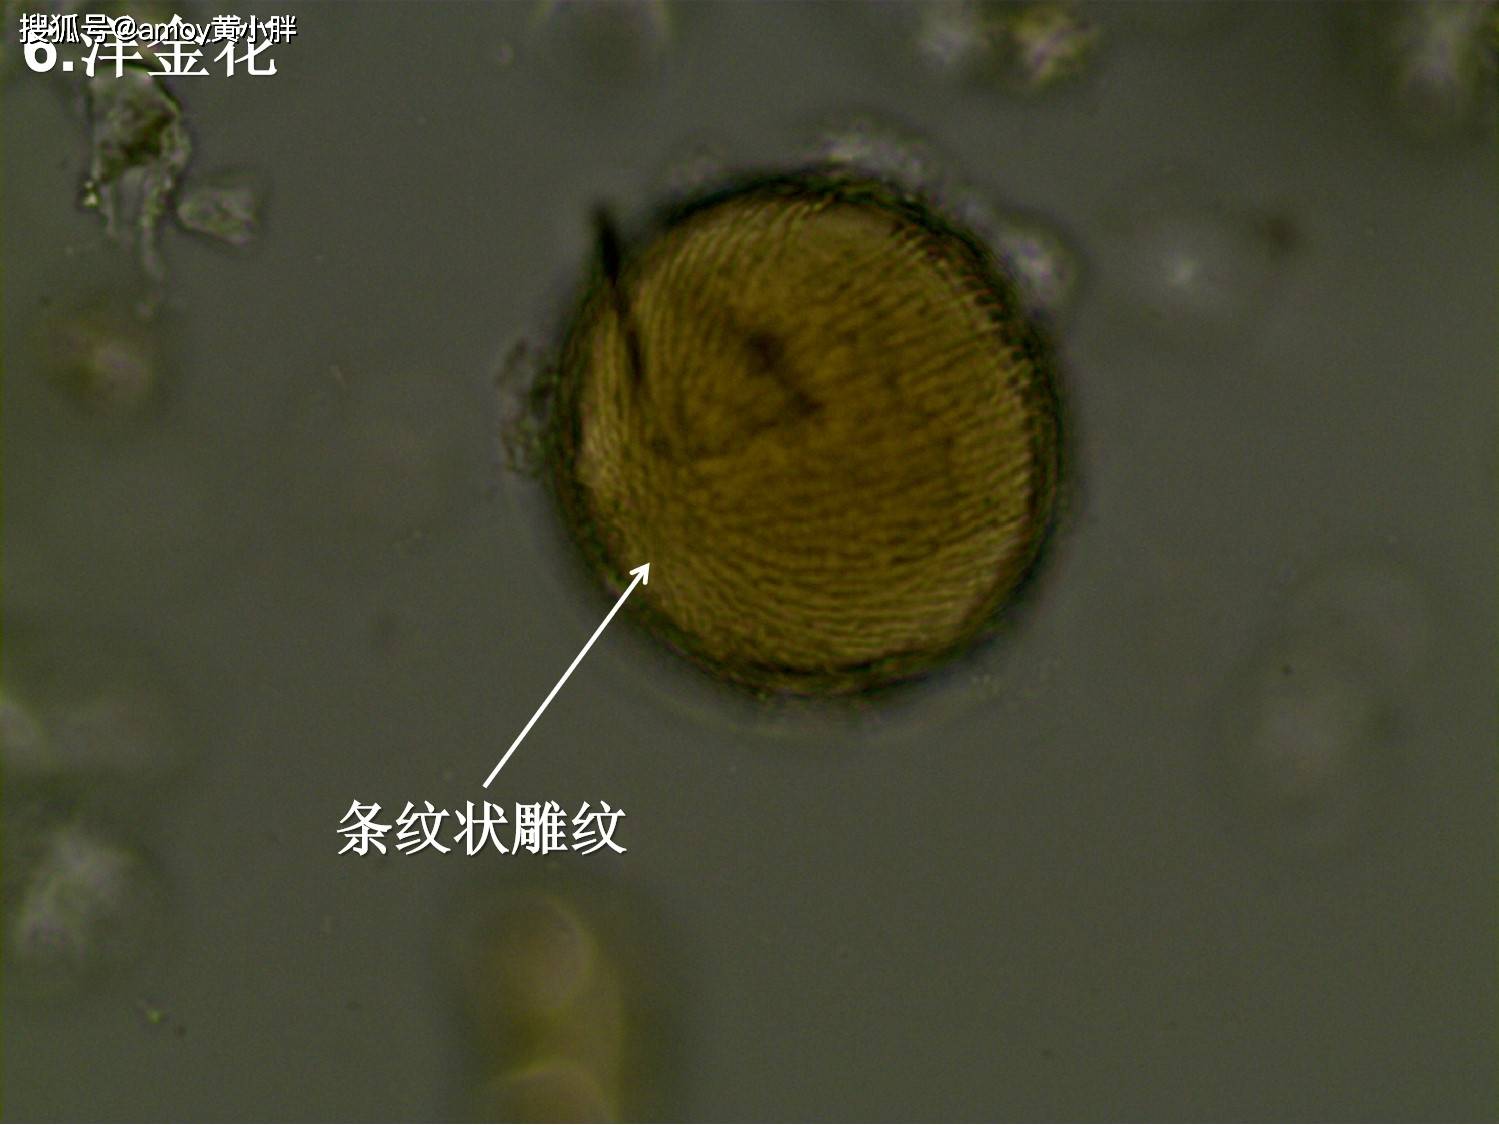 石细胞篇五味子 石细胞黄芩 石细胞肉桂 石细胞槟榔 石细胞黄柏 石